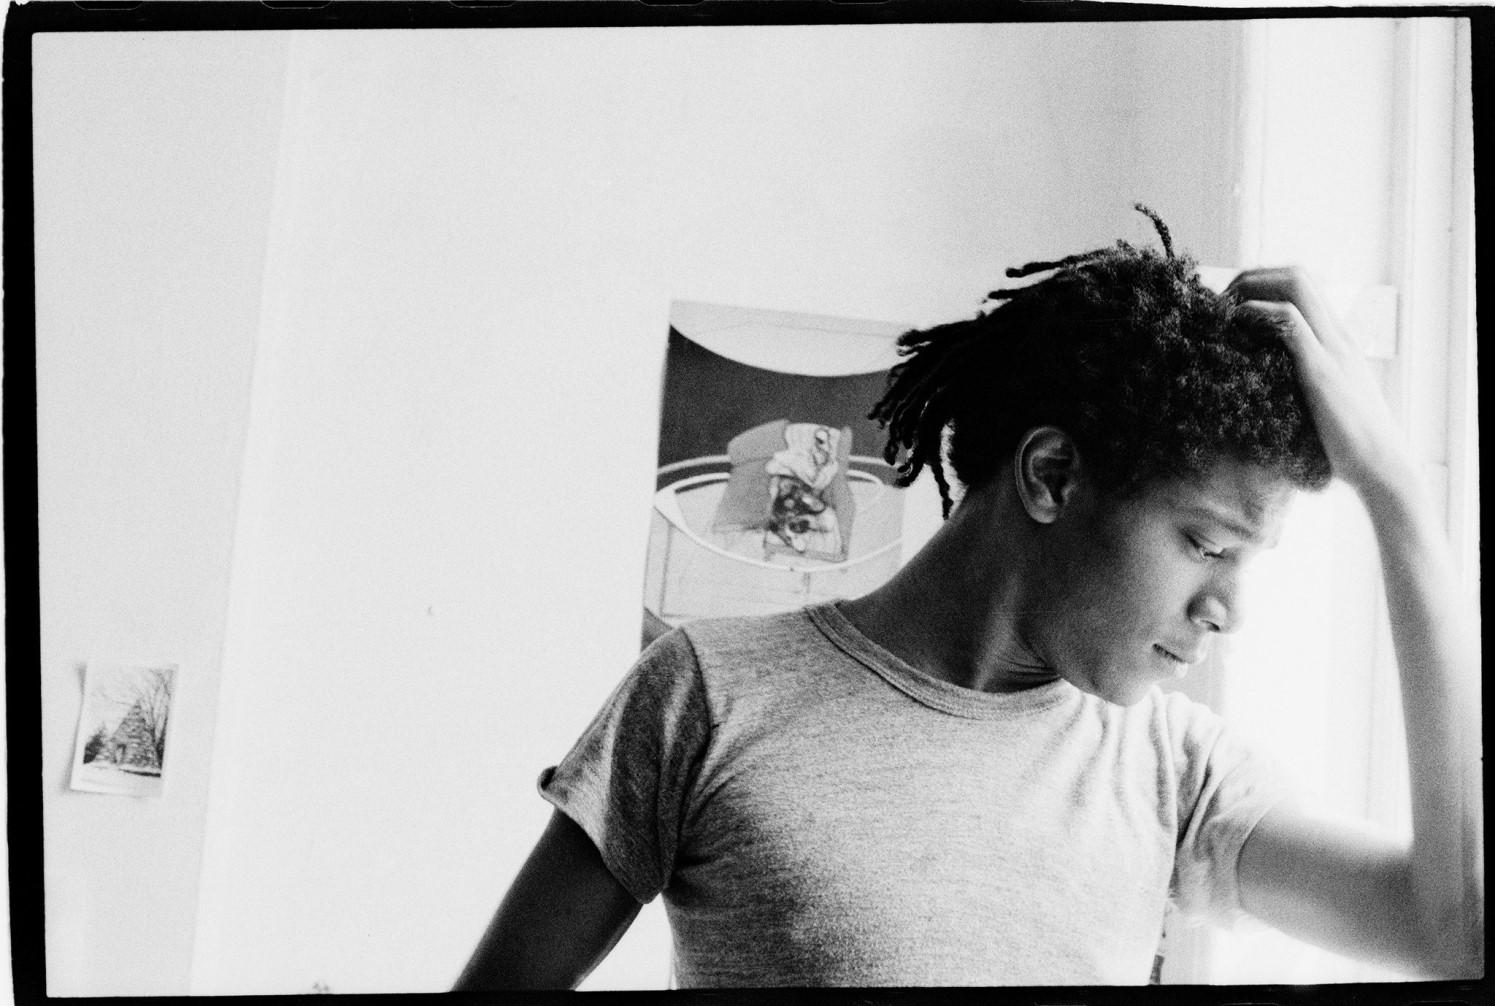 Jean-Michel Basquia